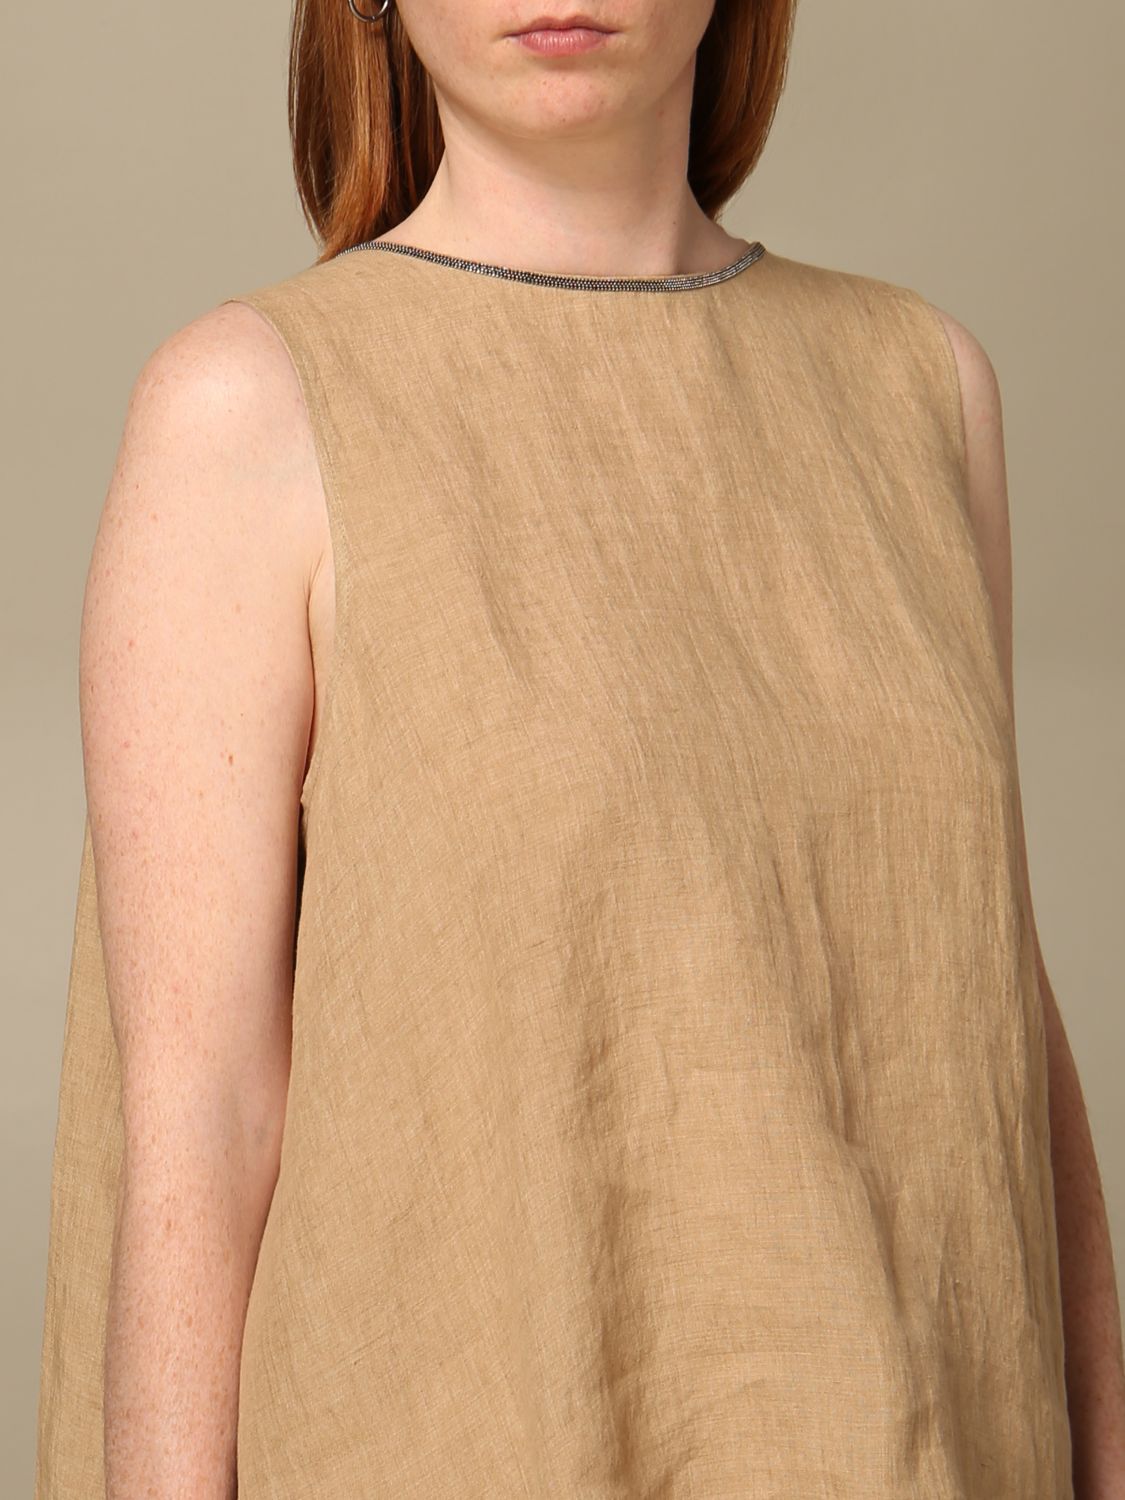 Fabiana Filippi Outlet: linen top with bow - Camel | Fabiana Filippi